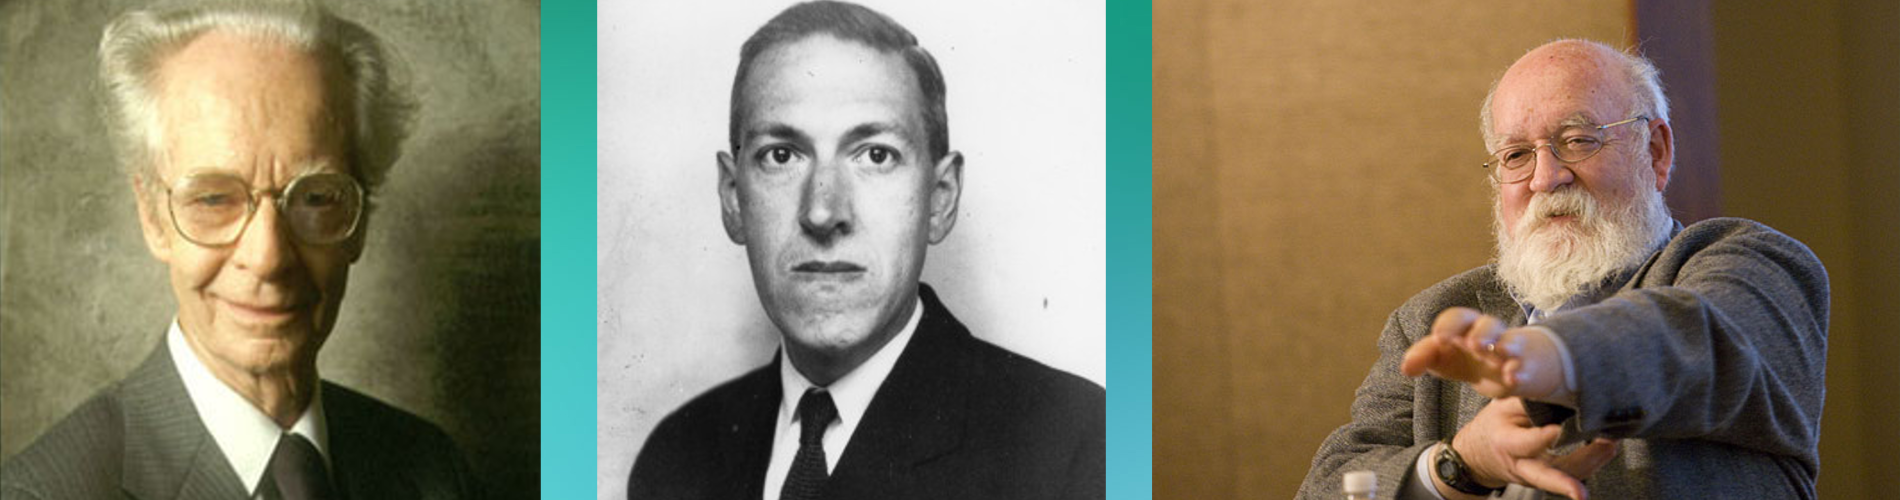 D.C.Dennett, B.F.Skinner and H.P.Lovecraft